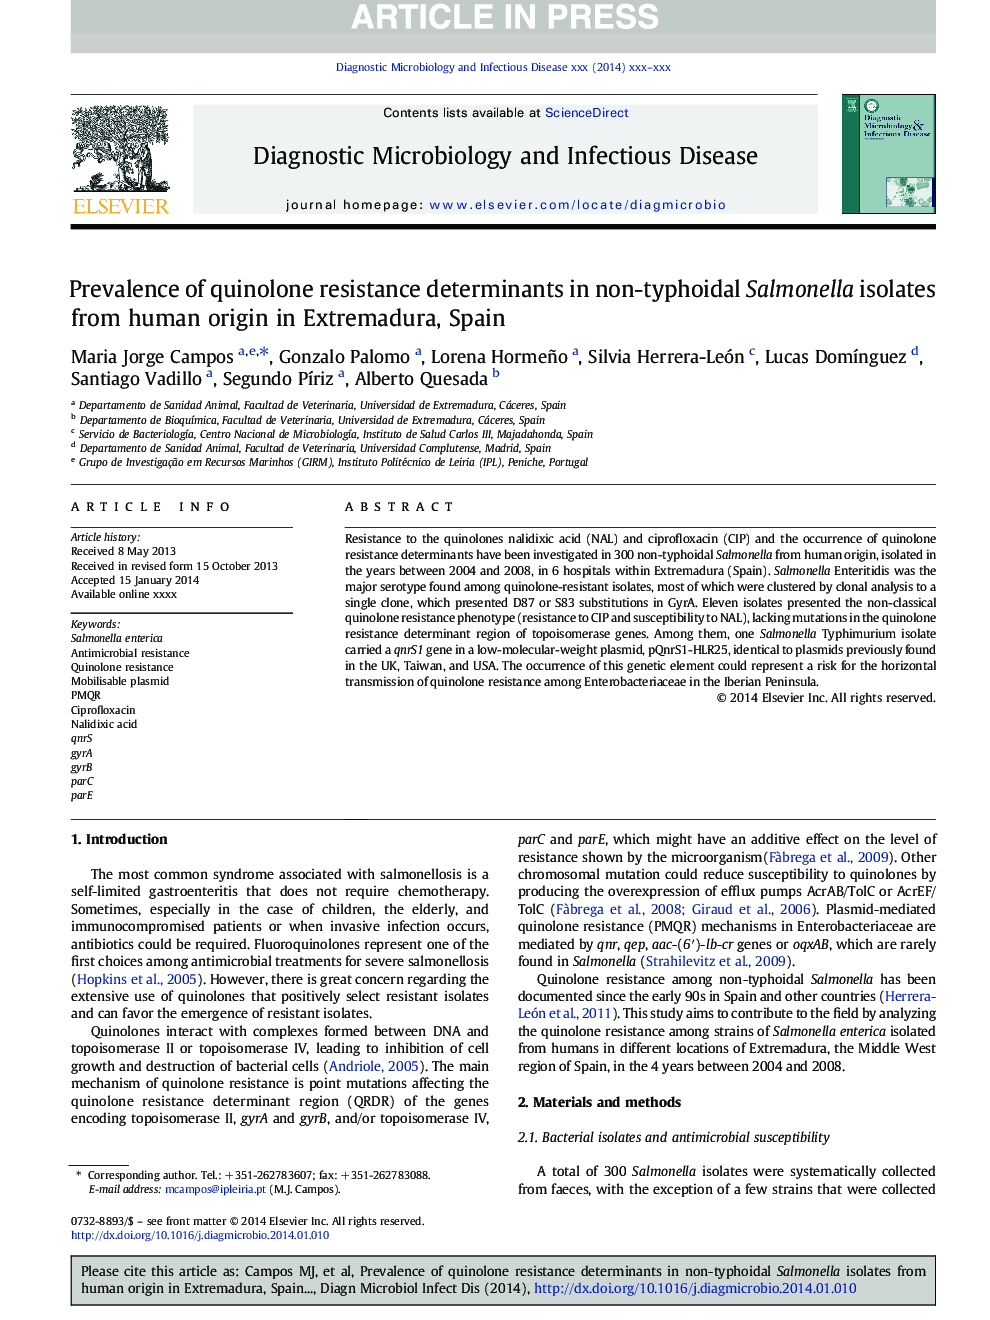 شیوع عوامل تعیین کننده مقاومت کوینولون در جدایه های سالمونلا غیرتفیایی از منبع انسانی در اتردامورا، اسپانیا 